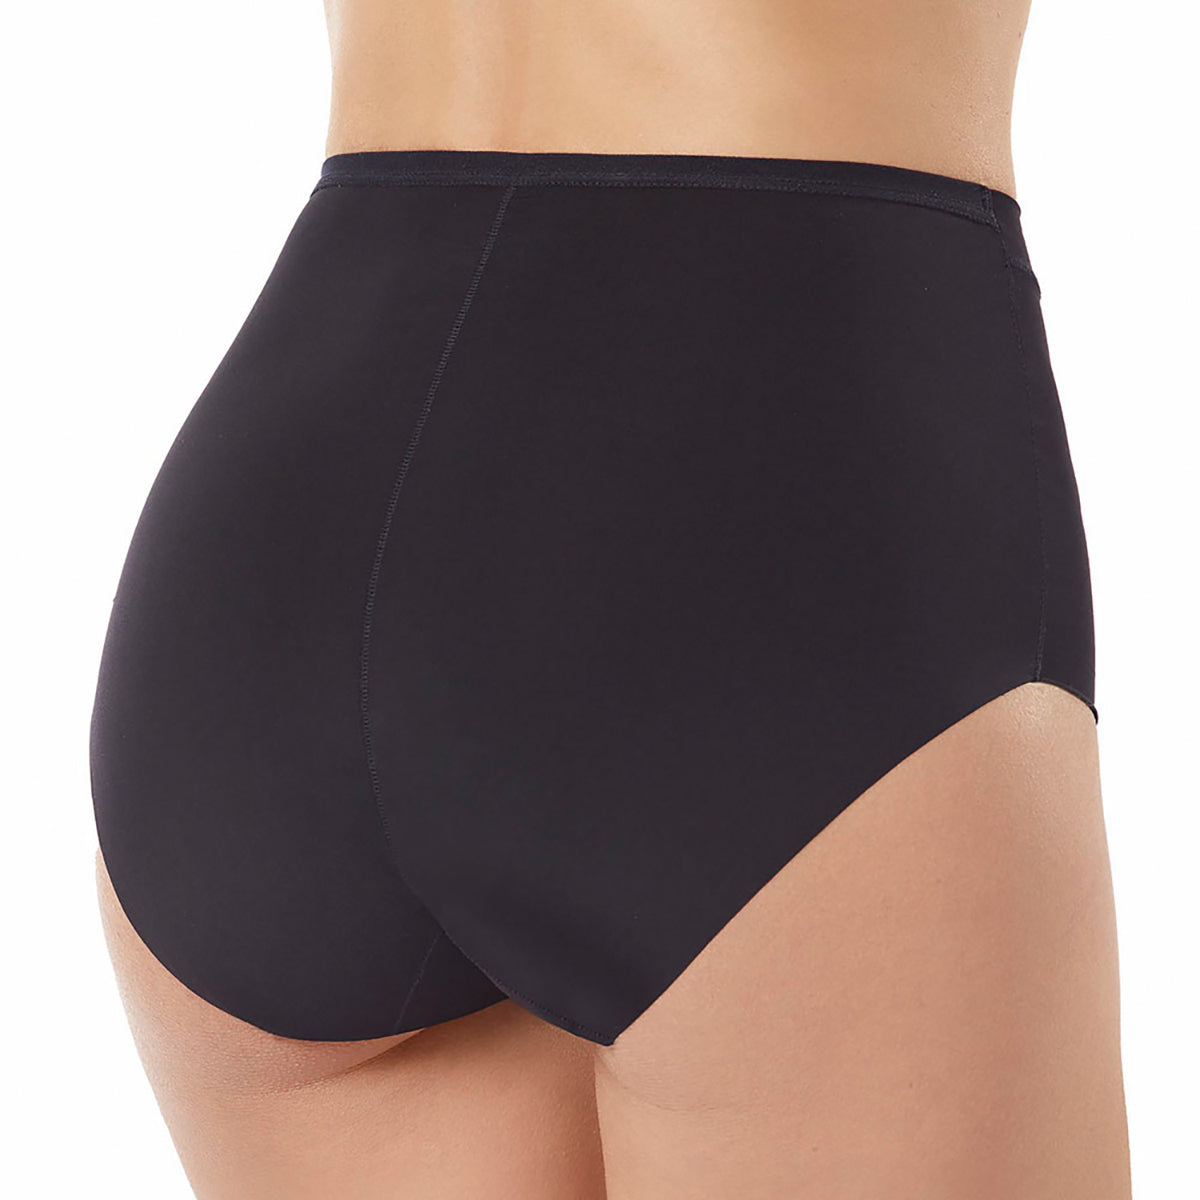 SAYFUT Women's Underwear Cotton Brief Panty,Soft Stretch Cheekini Hipster  Briefs 4 Pack/Black,Gray 